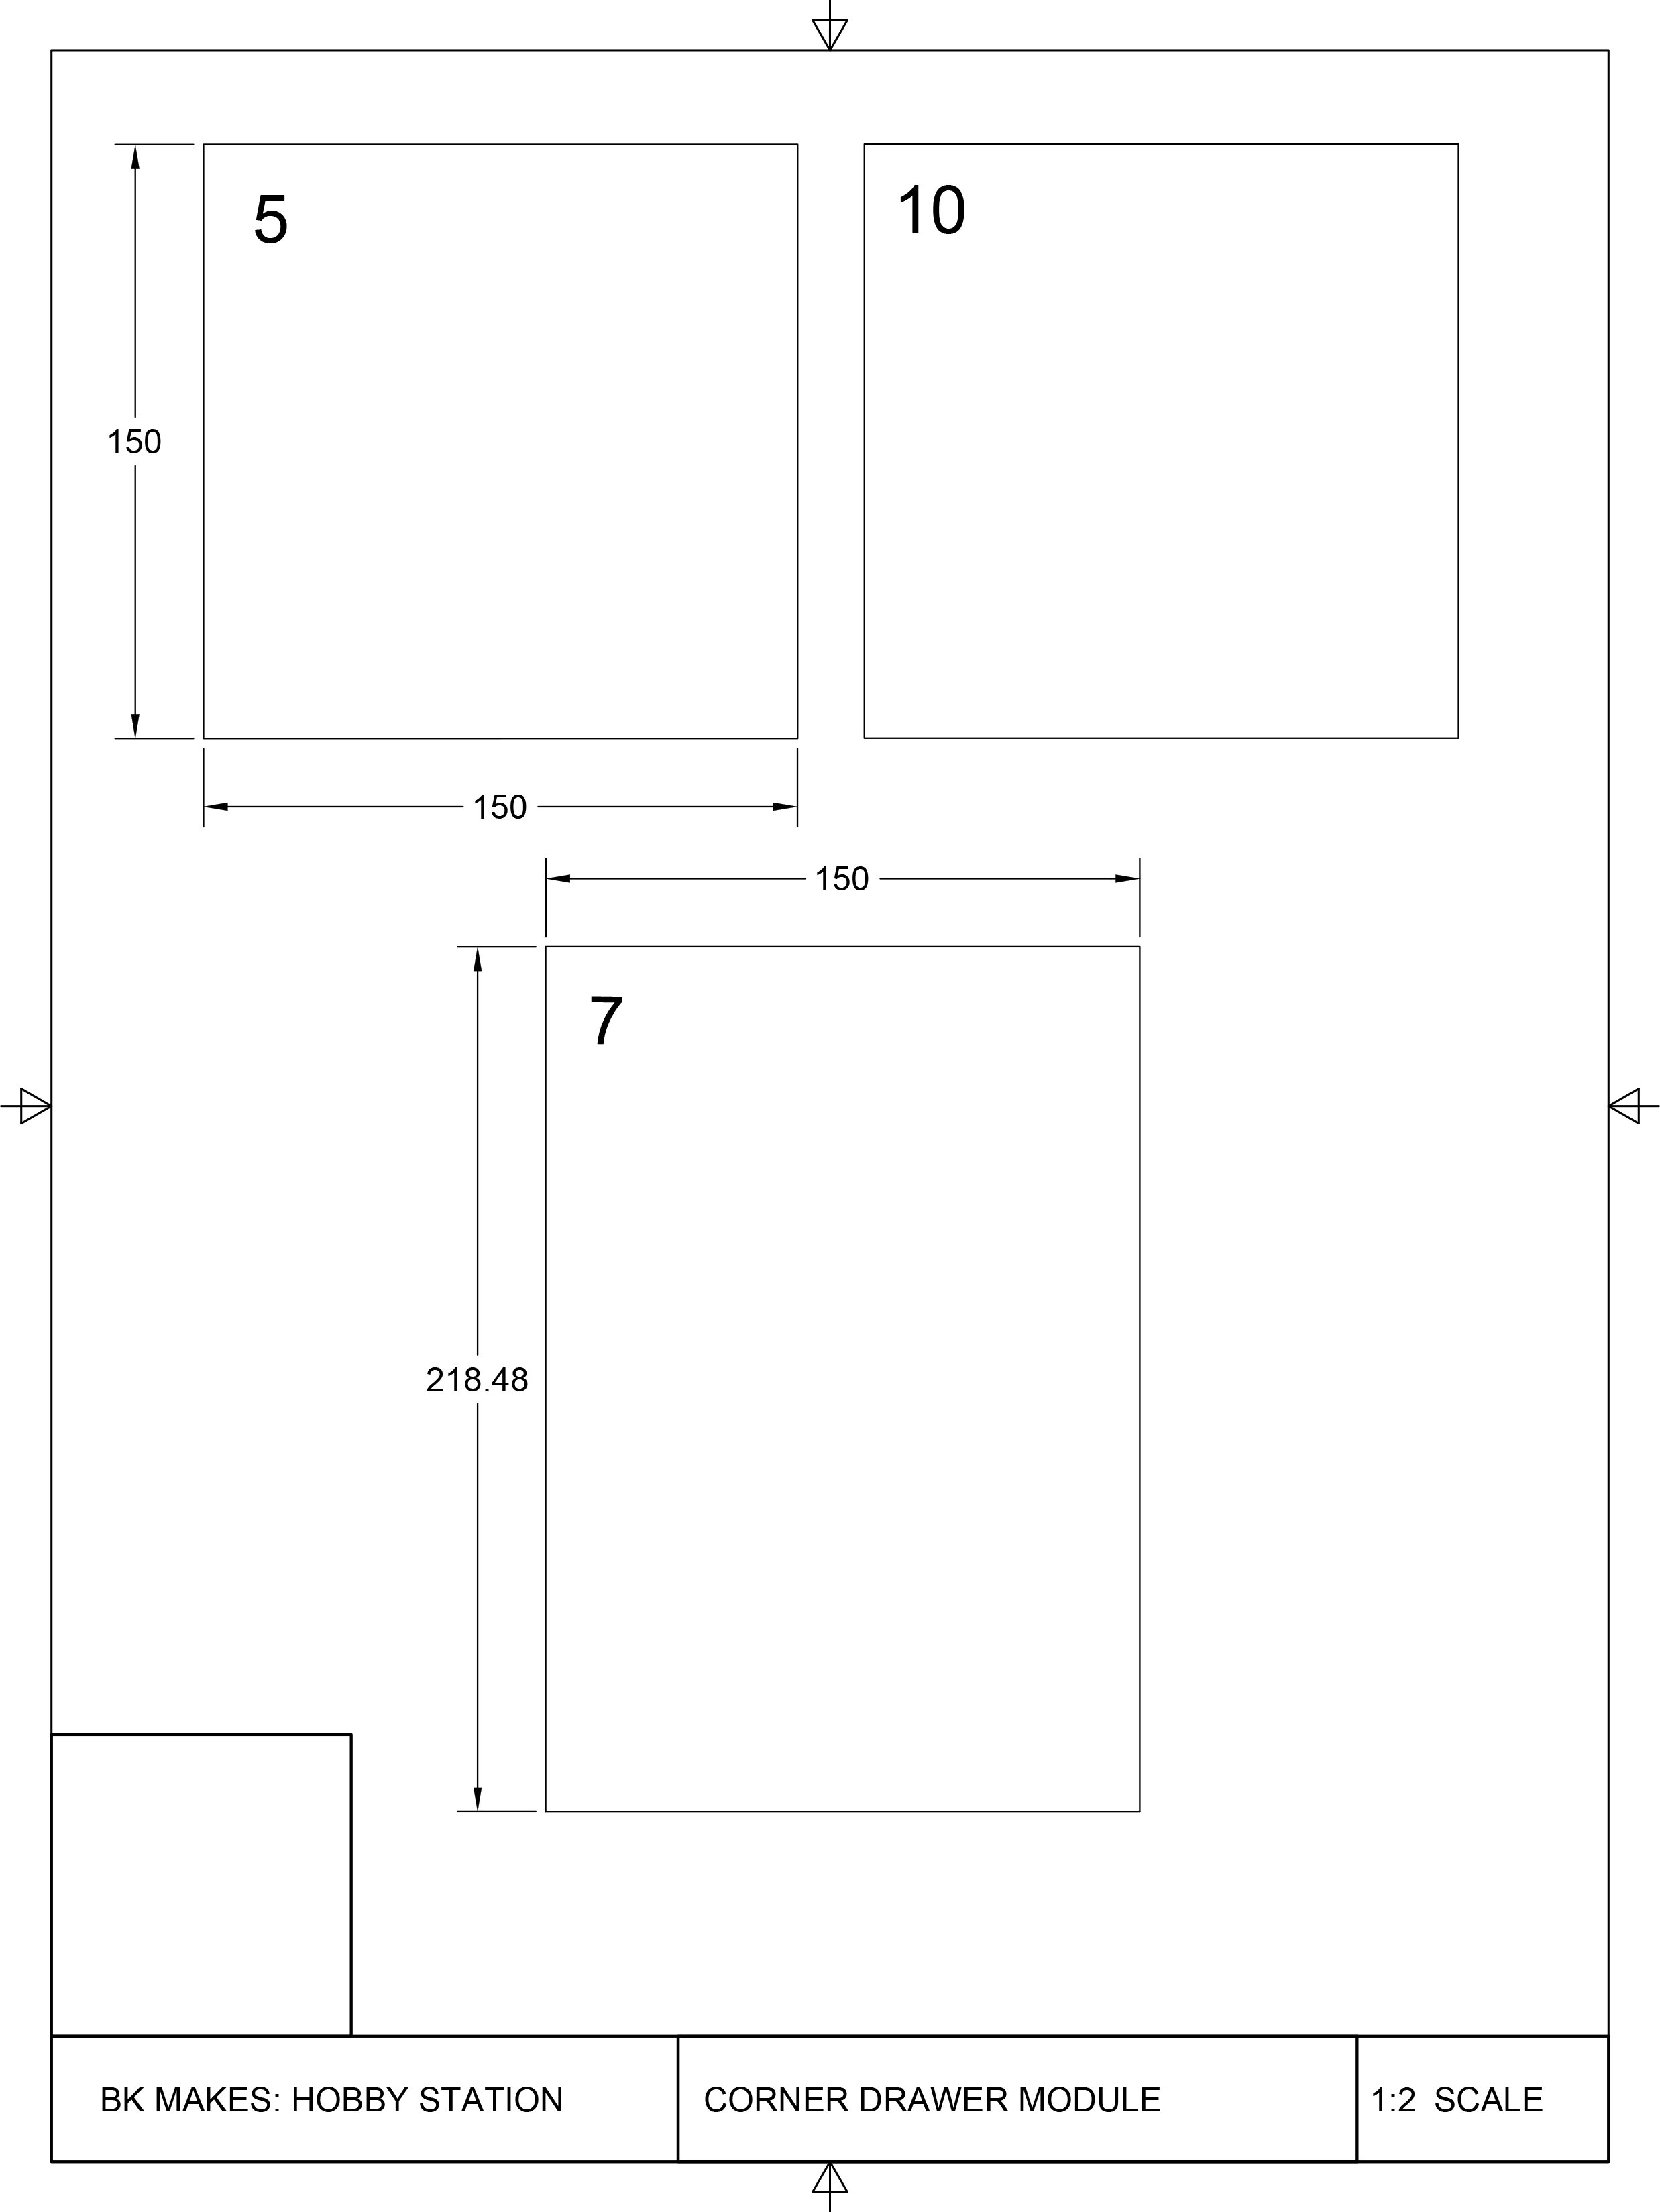 Corner Drawer Module Templates-4.jpg